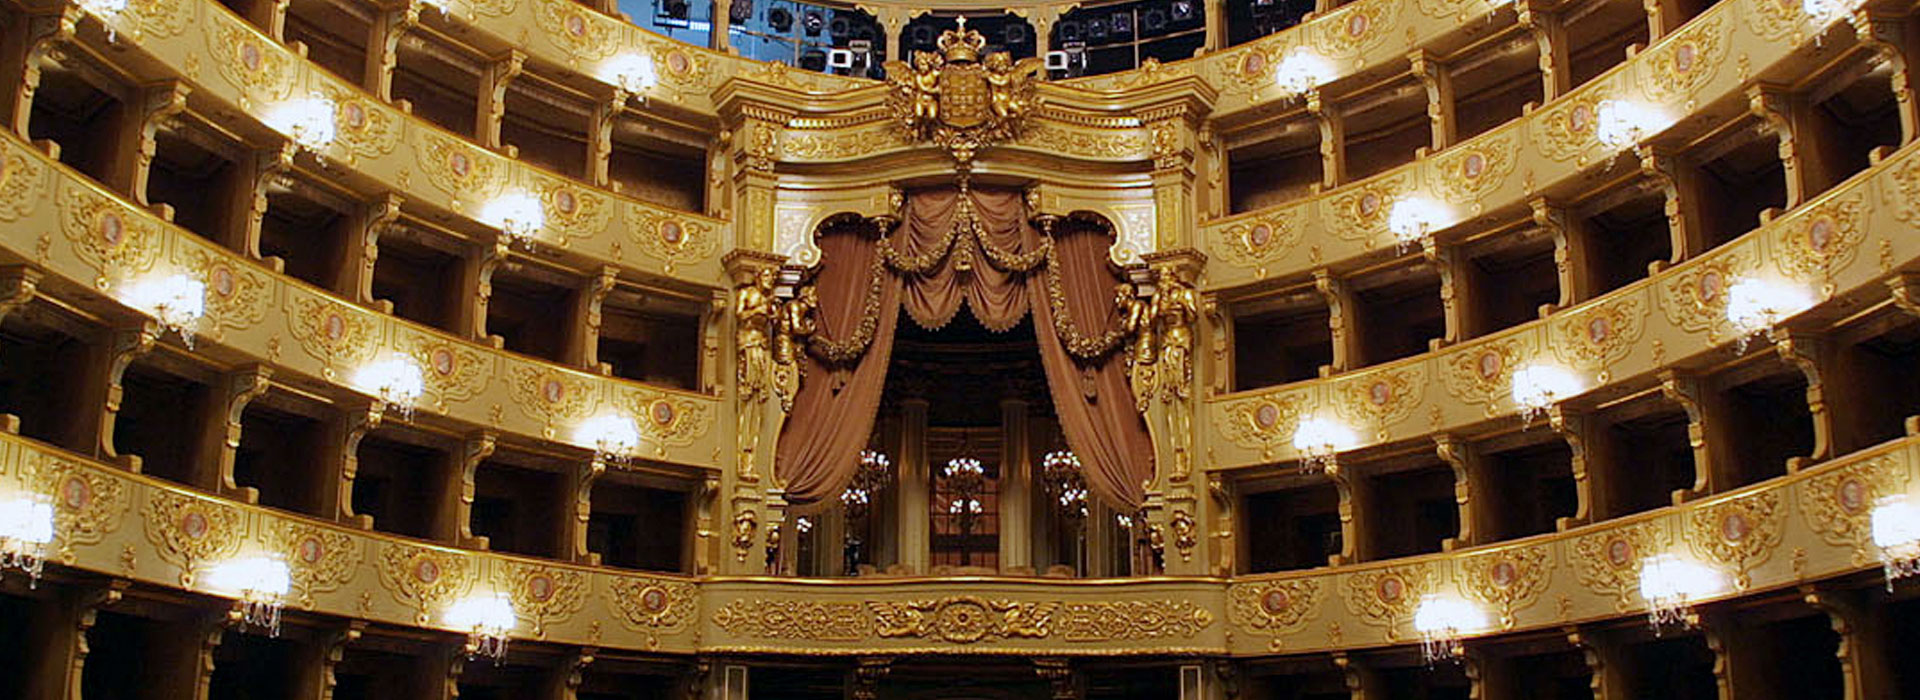 Teatro Nacional de São Carlos